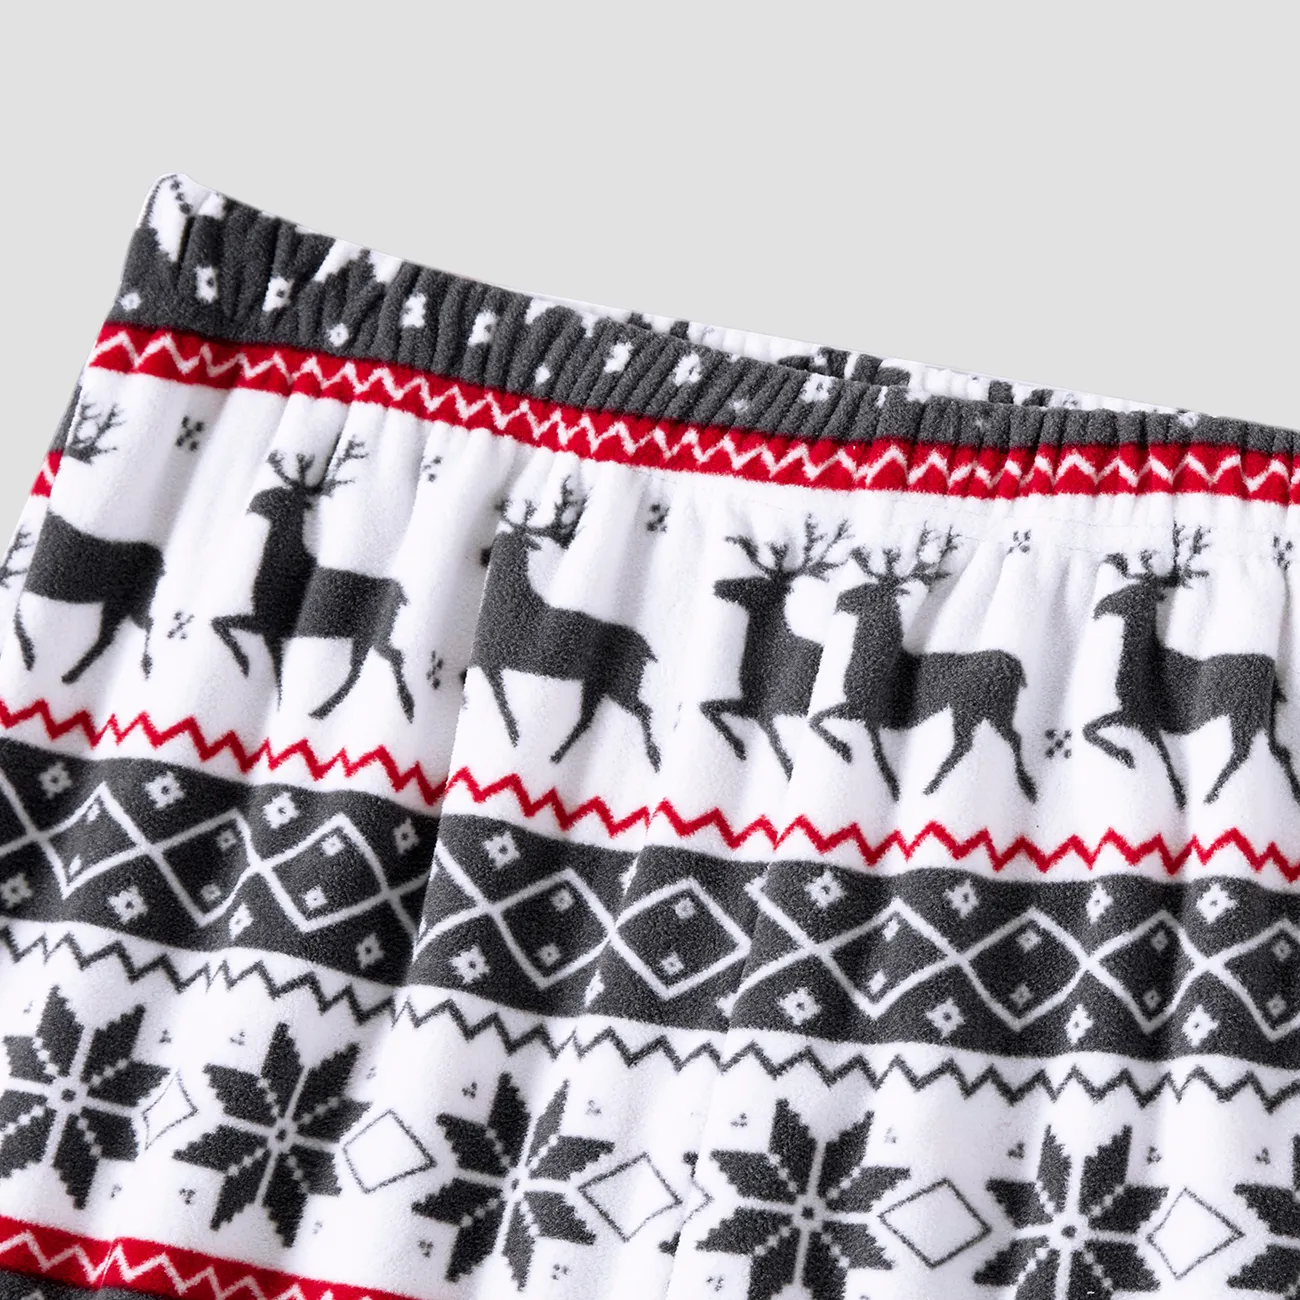 Christmas Family Matching Reindeer & Snowflake All-over Print Long-sleeve Fleece Pajamas Sets(Flame resistant) Grey big image 1